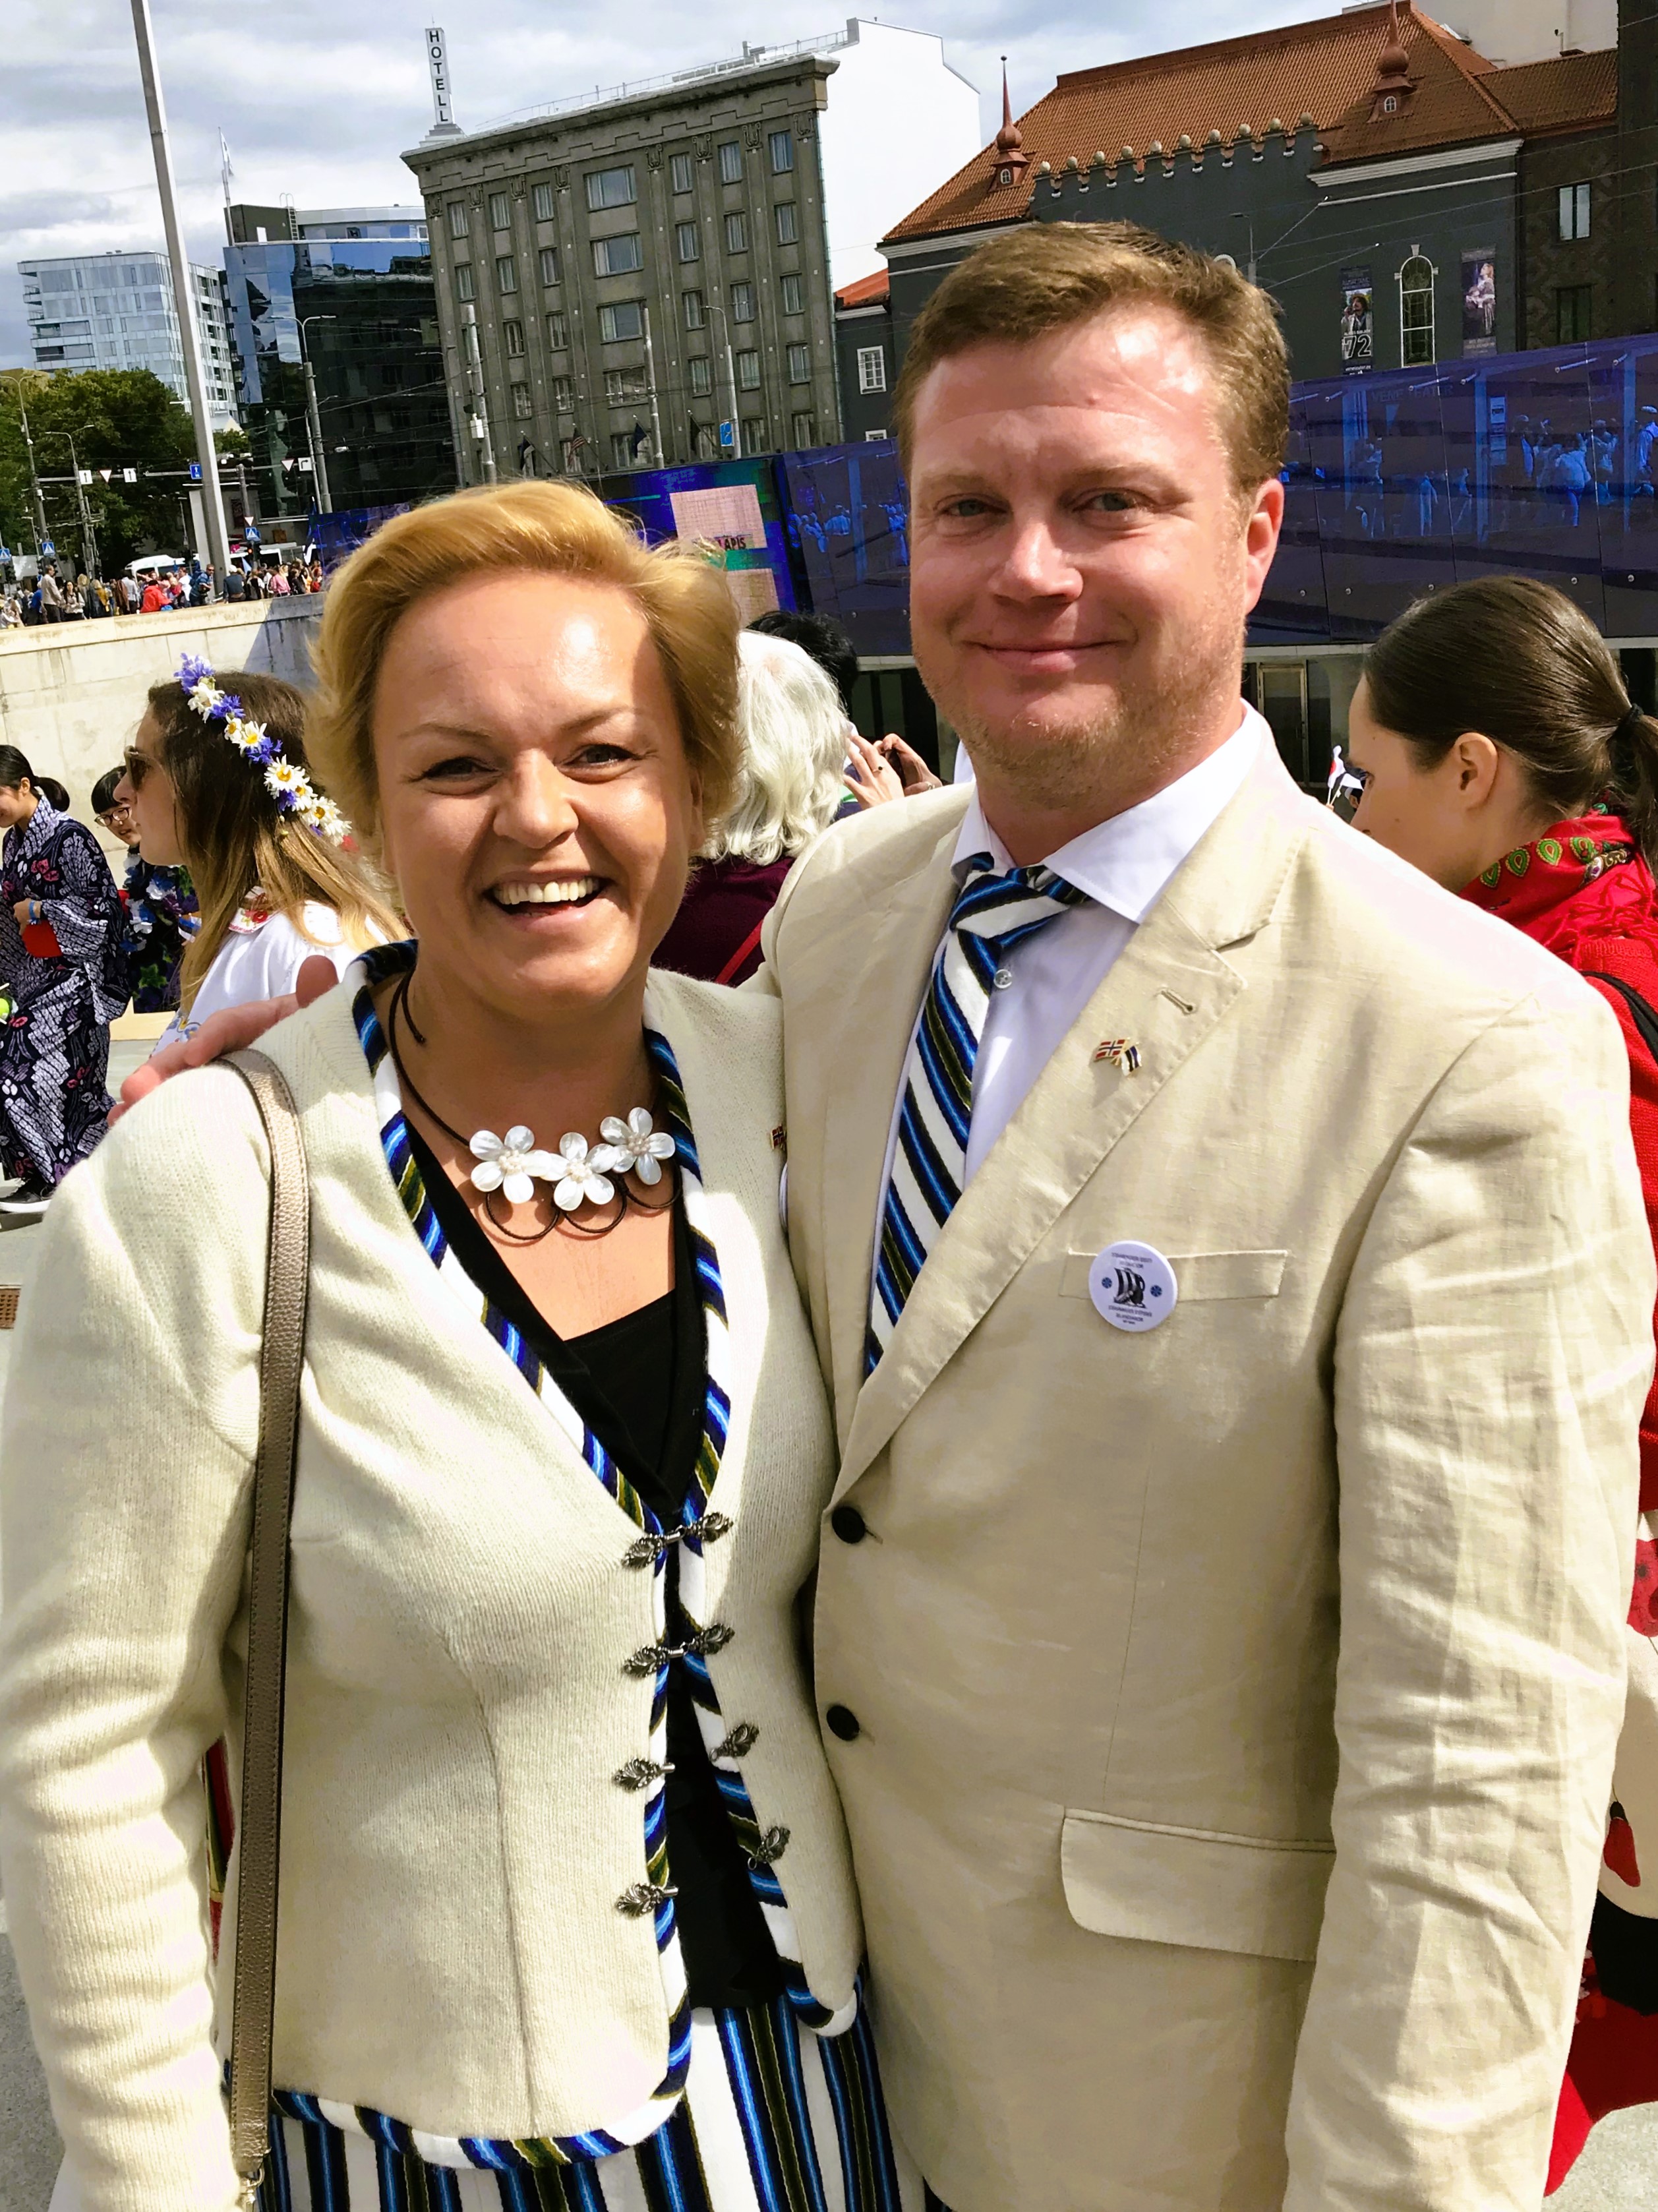 Stavangeris elav eestlane ja selle loo autor Anneli Andersen ühes oma norrakast abikaasa Aadne Andersen'iga Laulupeo rongkäigu eelses ootusärevuses.